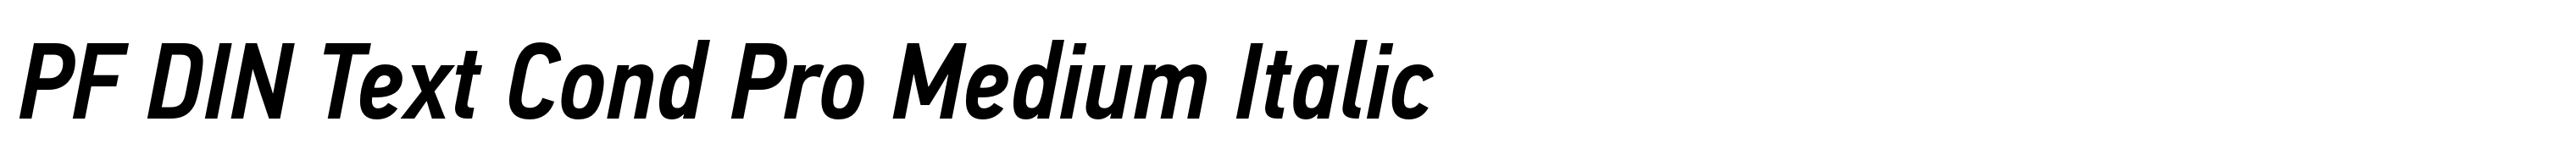 PF DIN Text Cond Pro Medium Italic